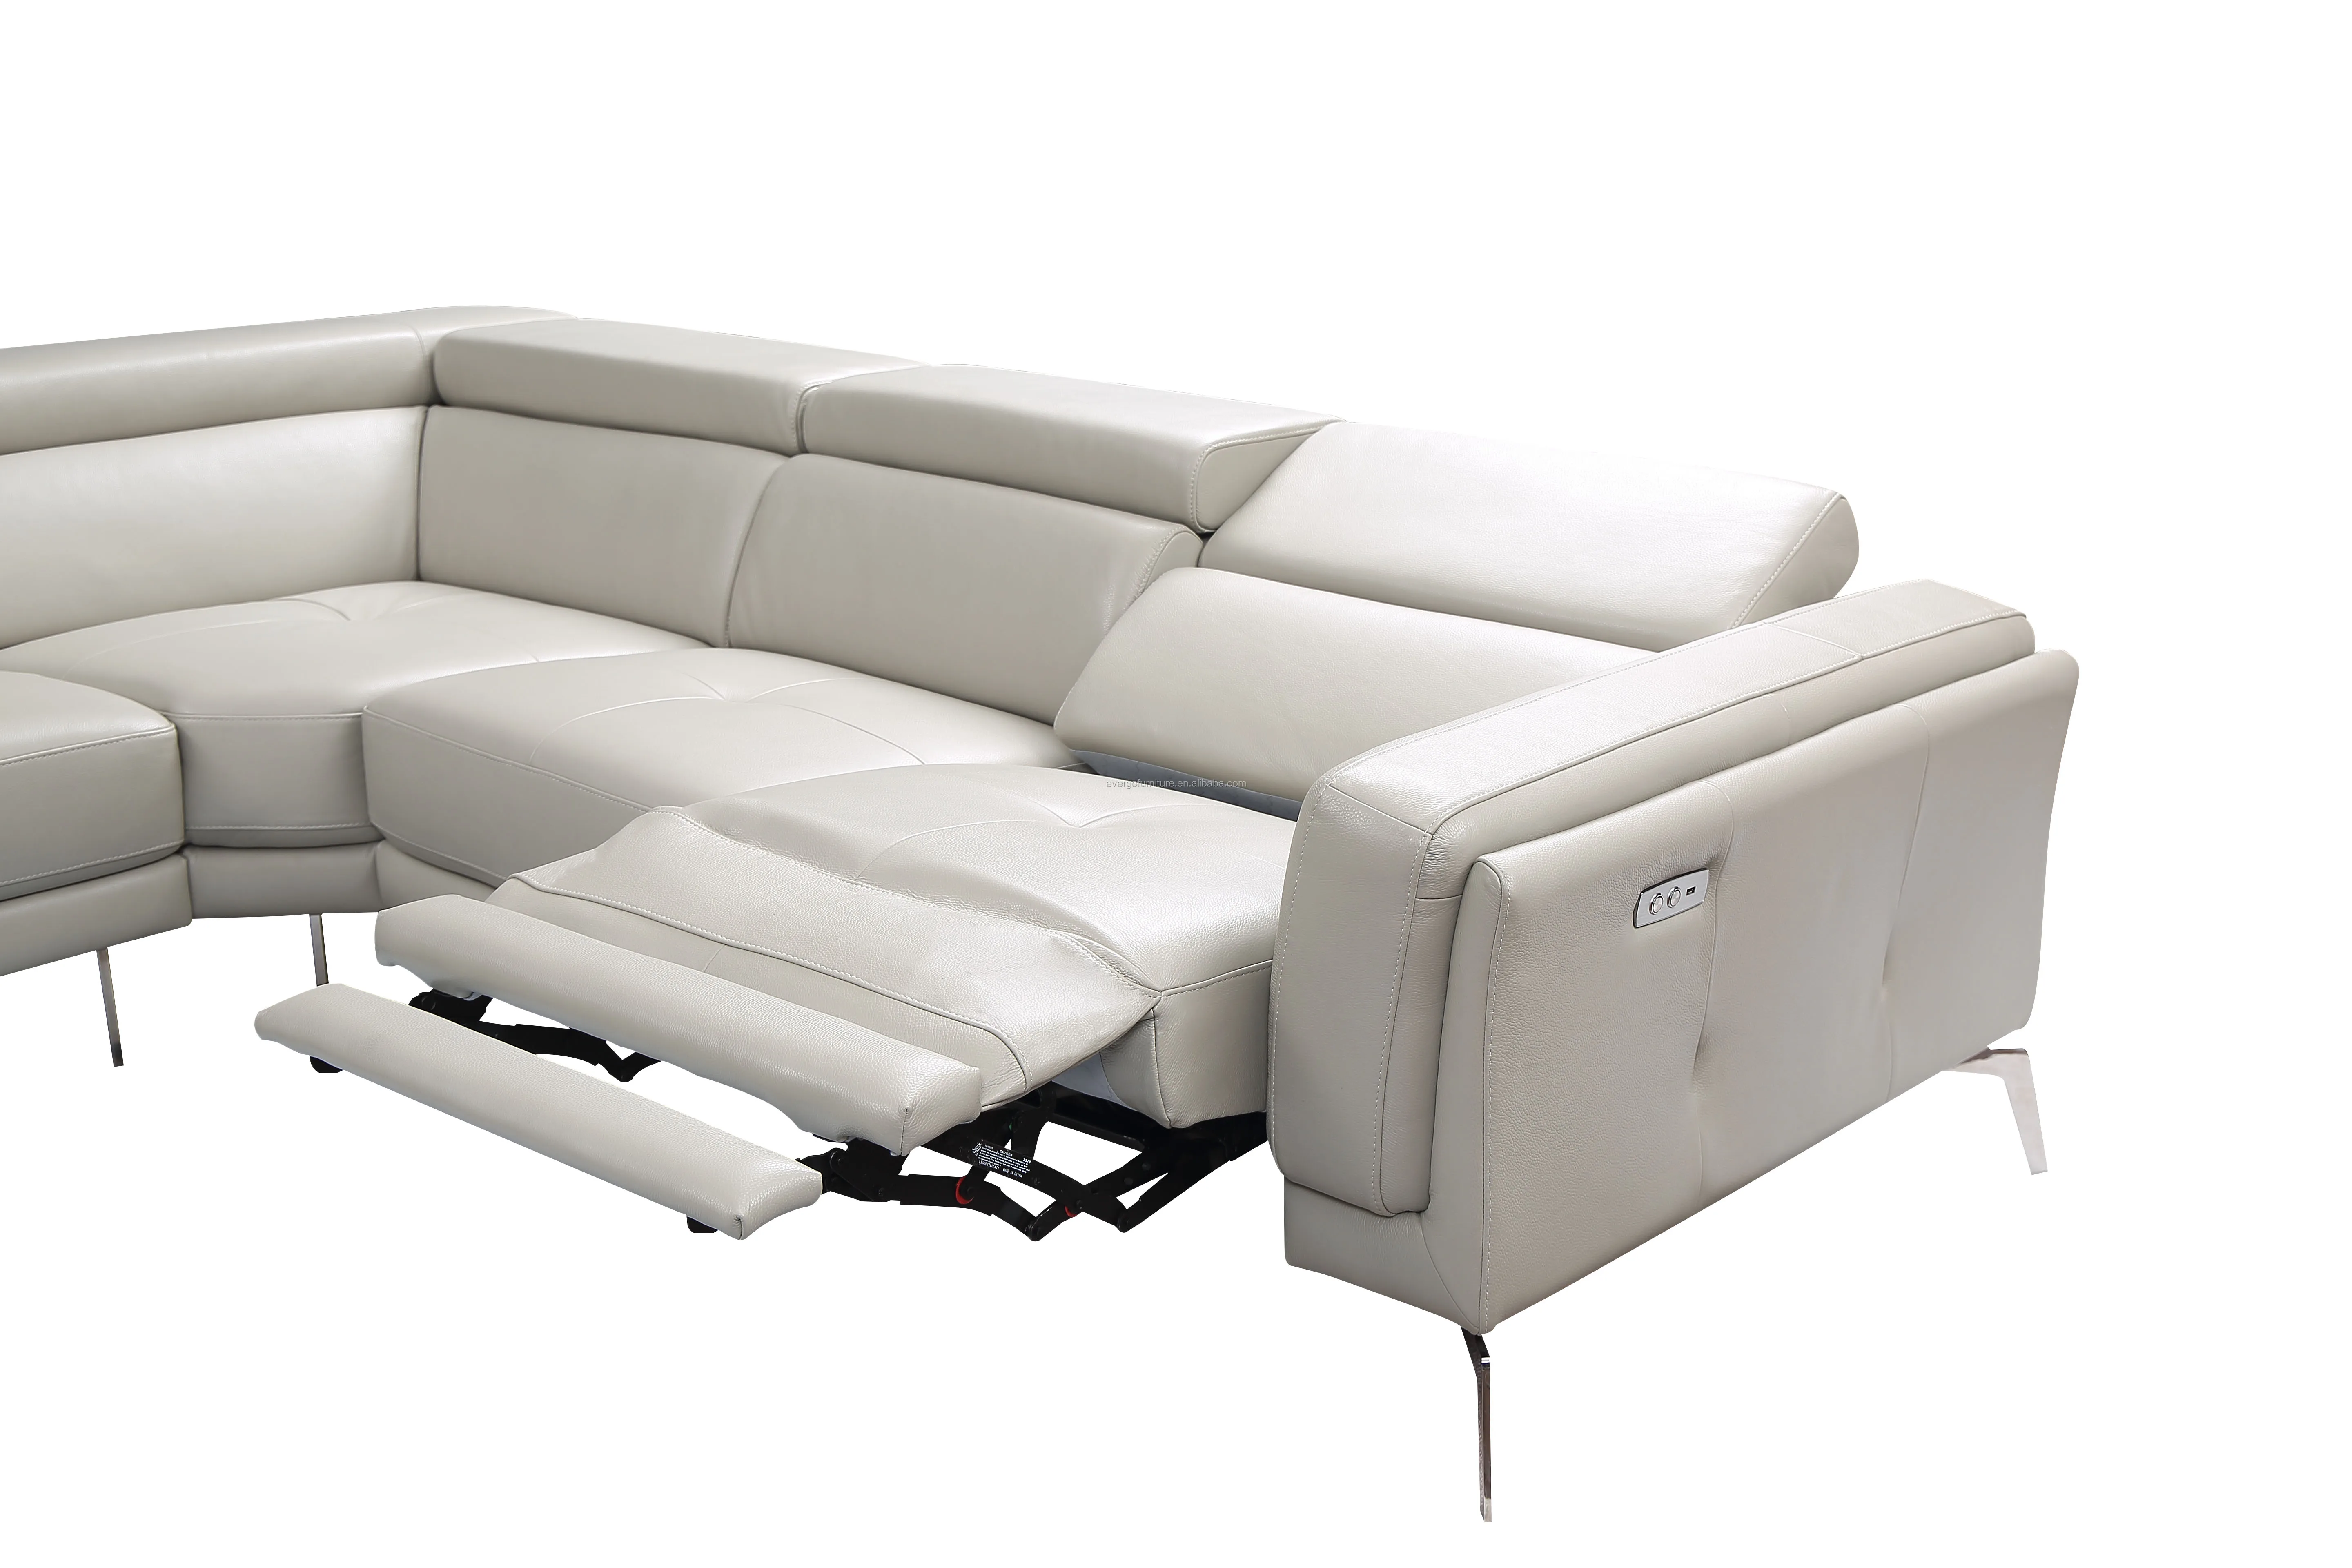 C-образная мебель, итальянский кожаный секционный диван, диван с откидывающейся спинкой для дома